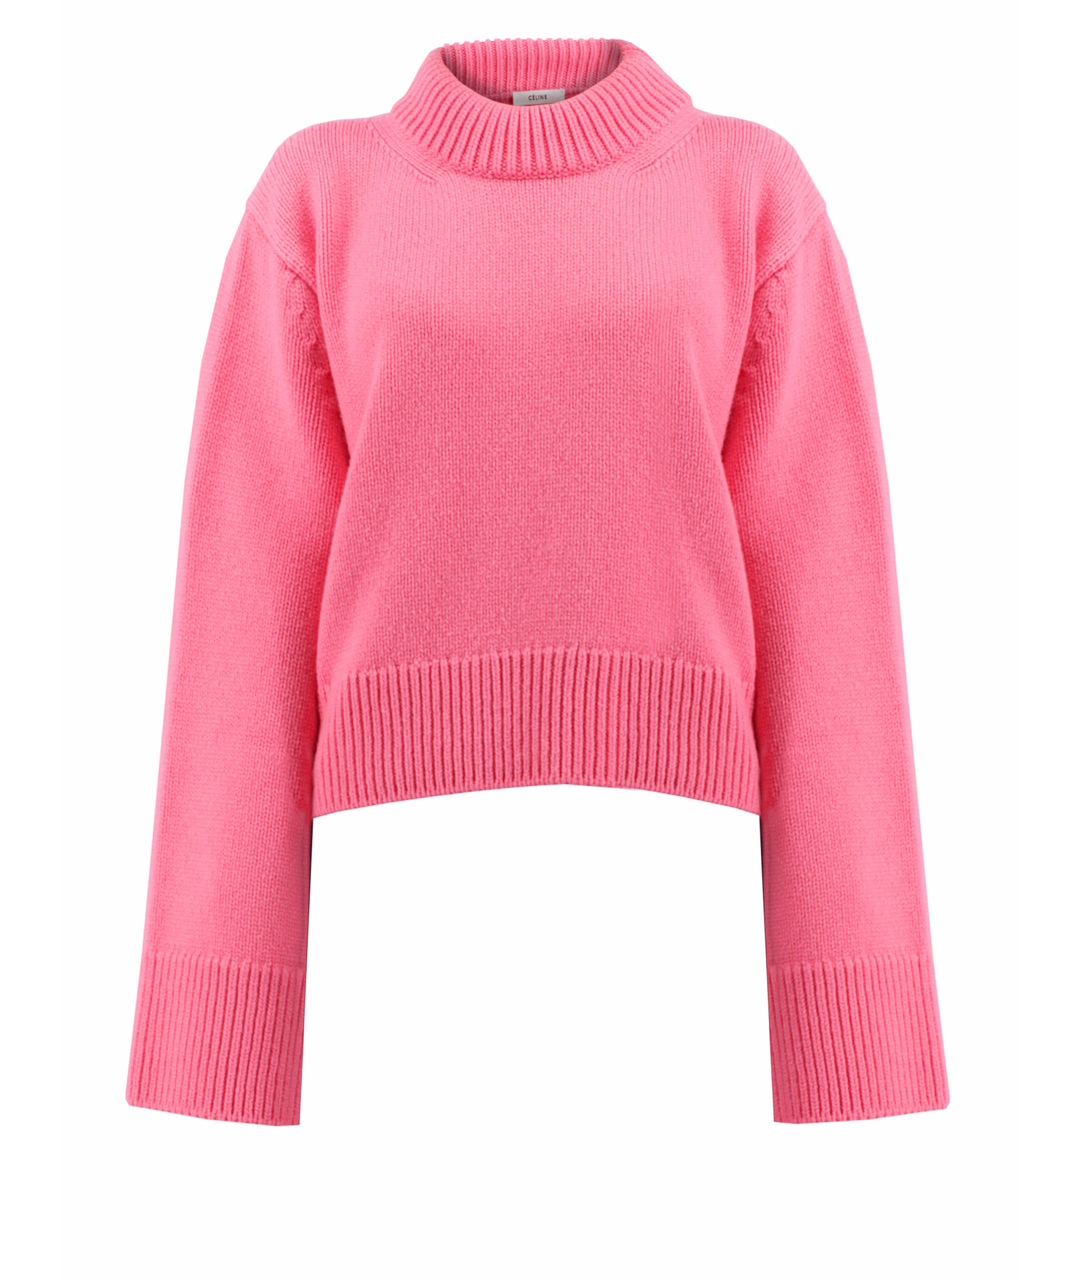 CELINE PRE-OWNED Розовый кашемировый джемпер / свитер, фото 1